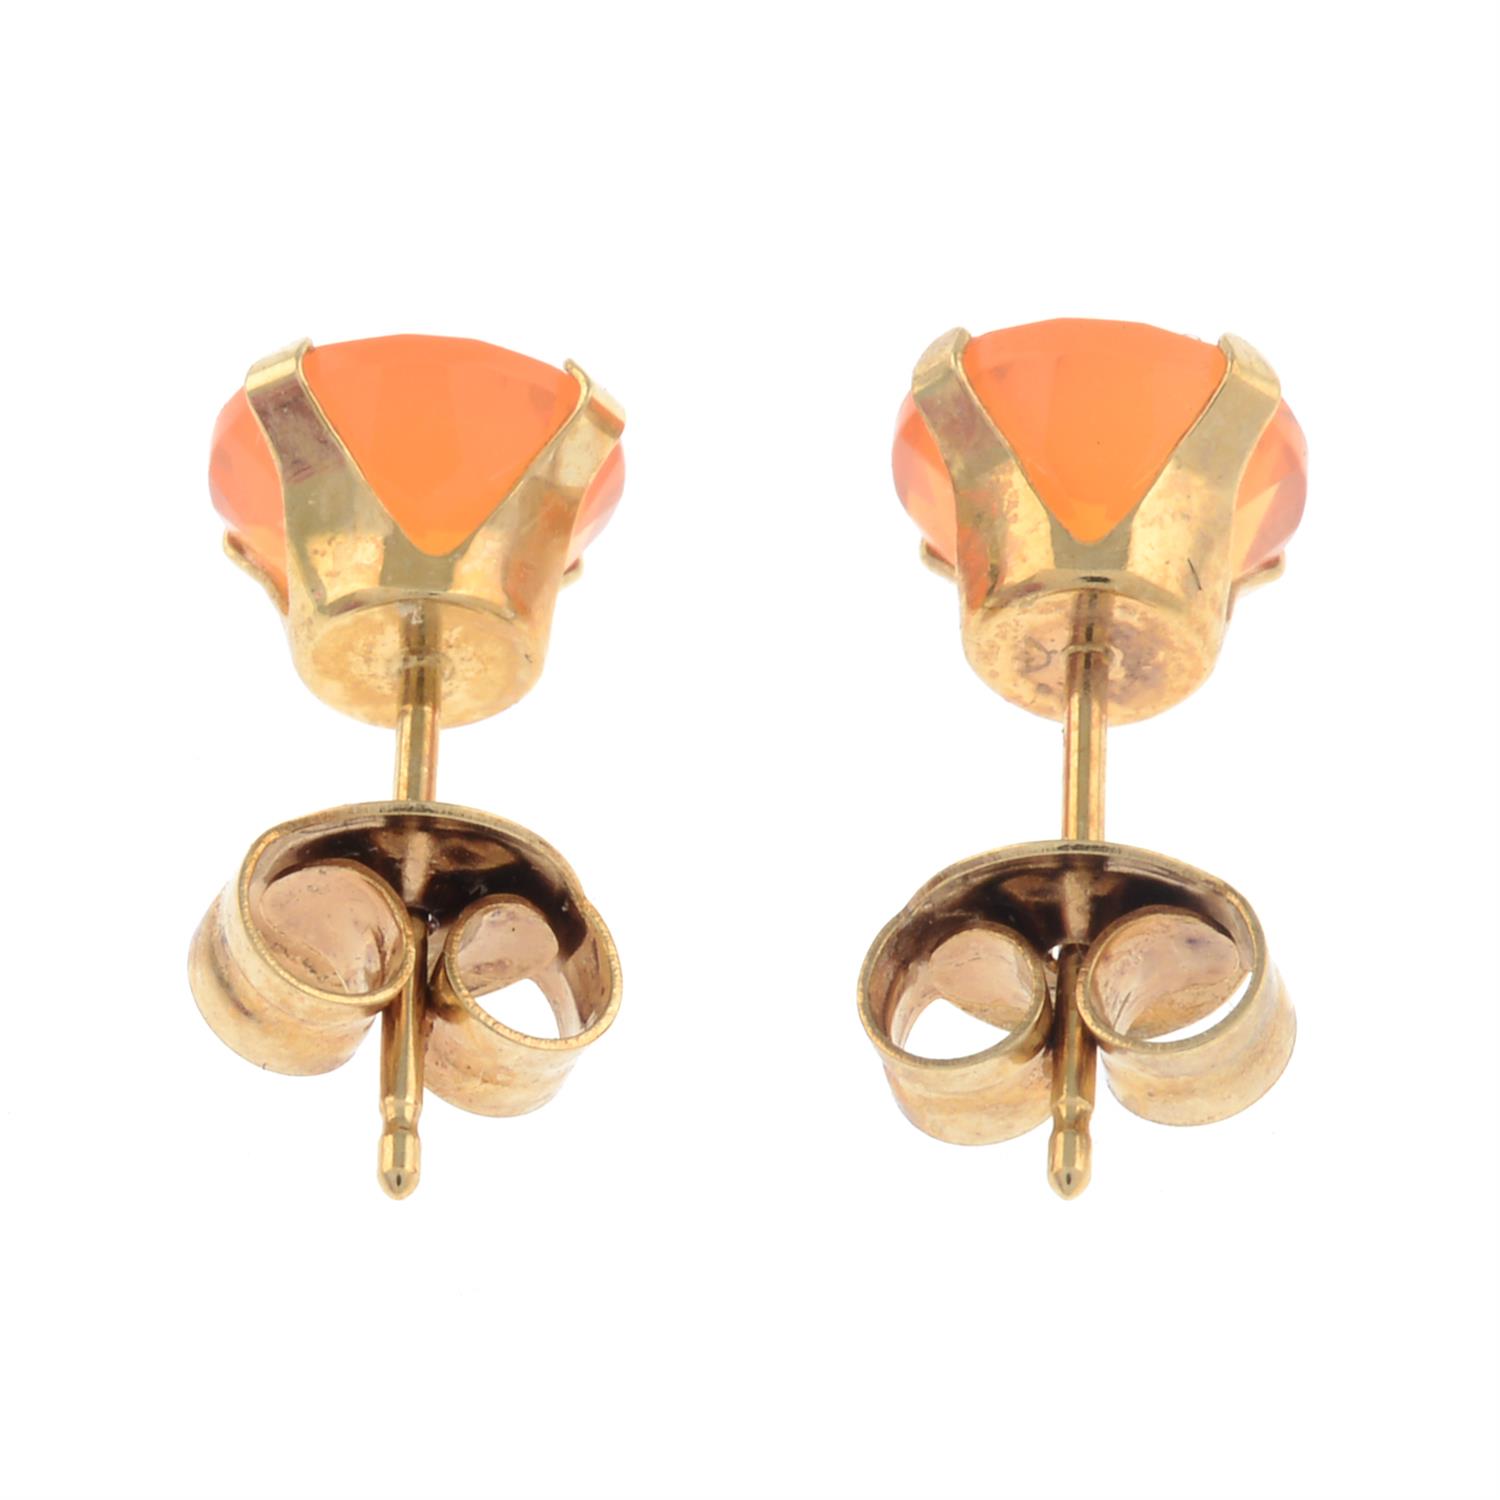 Fire opal single-stone earrings - Image 2 of 2